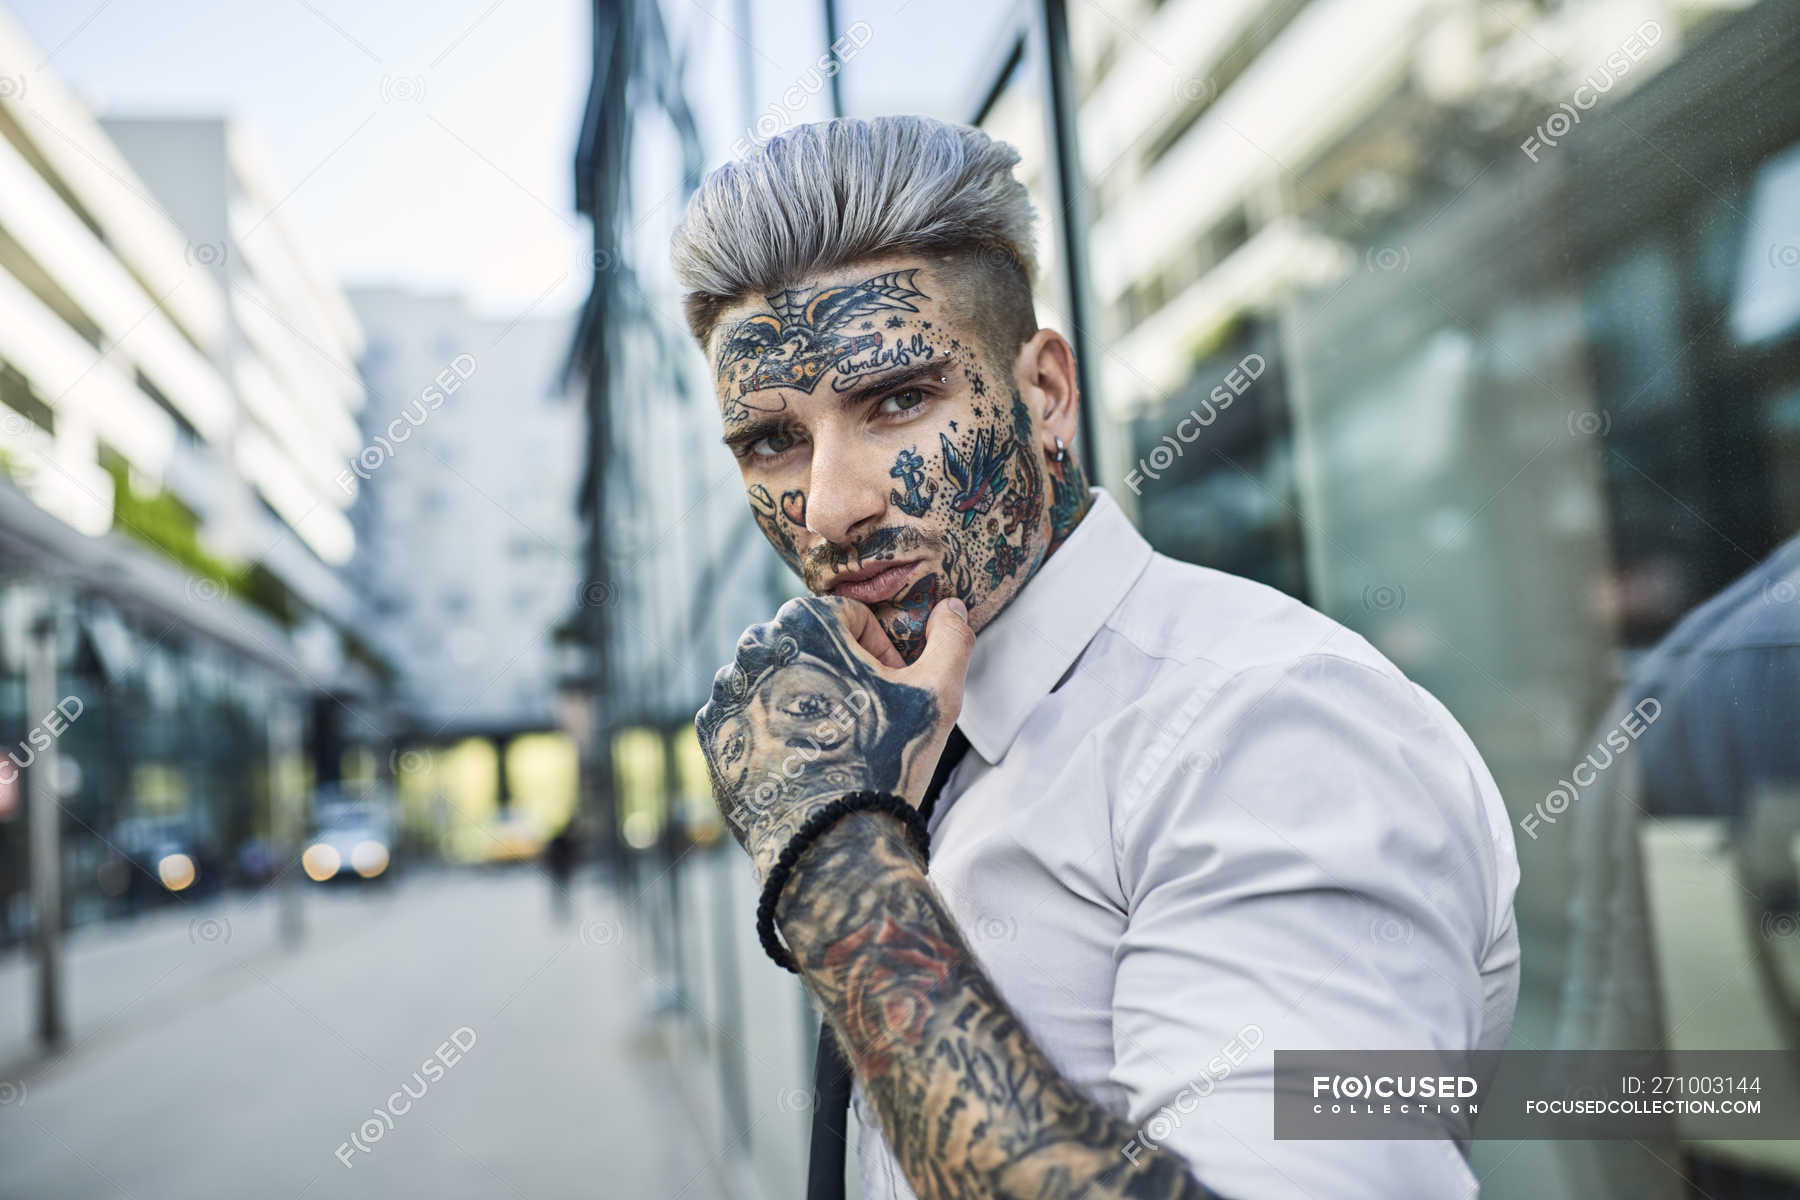 Jeune homme d'affaires au visage tatoué marchant dans la ville, portrait —  Art corporel, marche - Stock Photo | #271003144